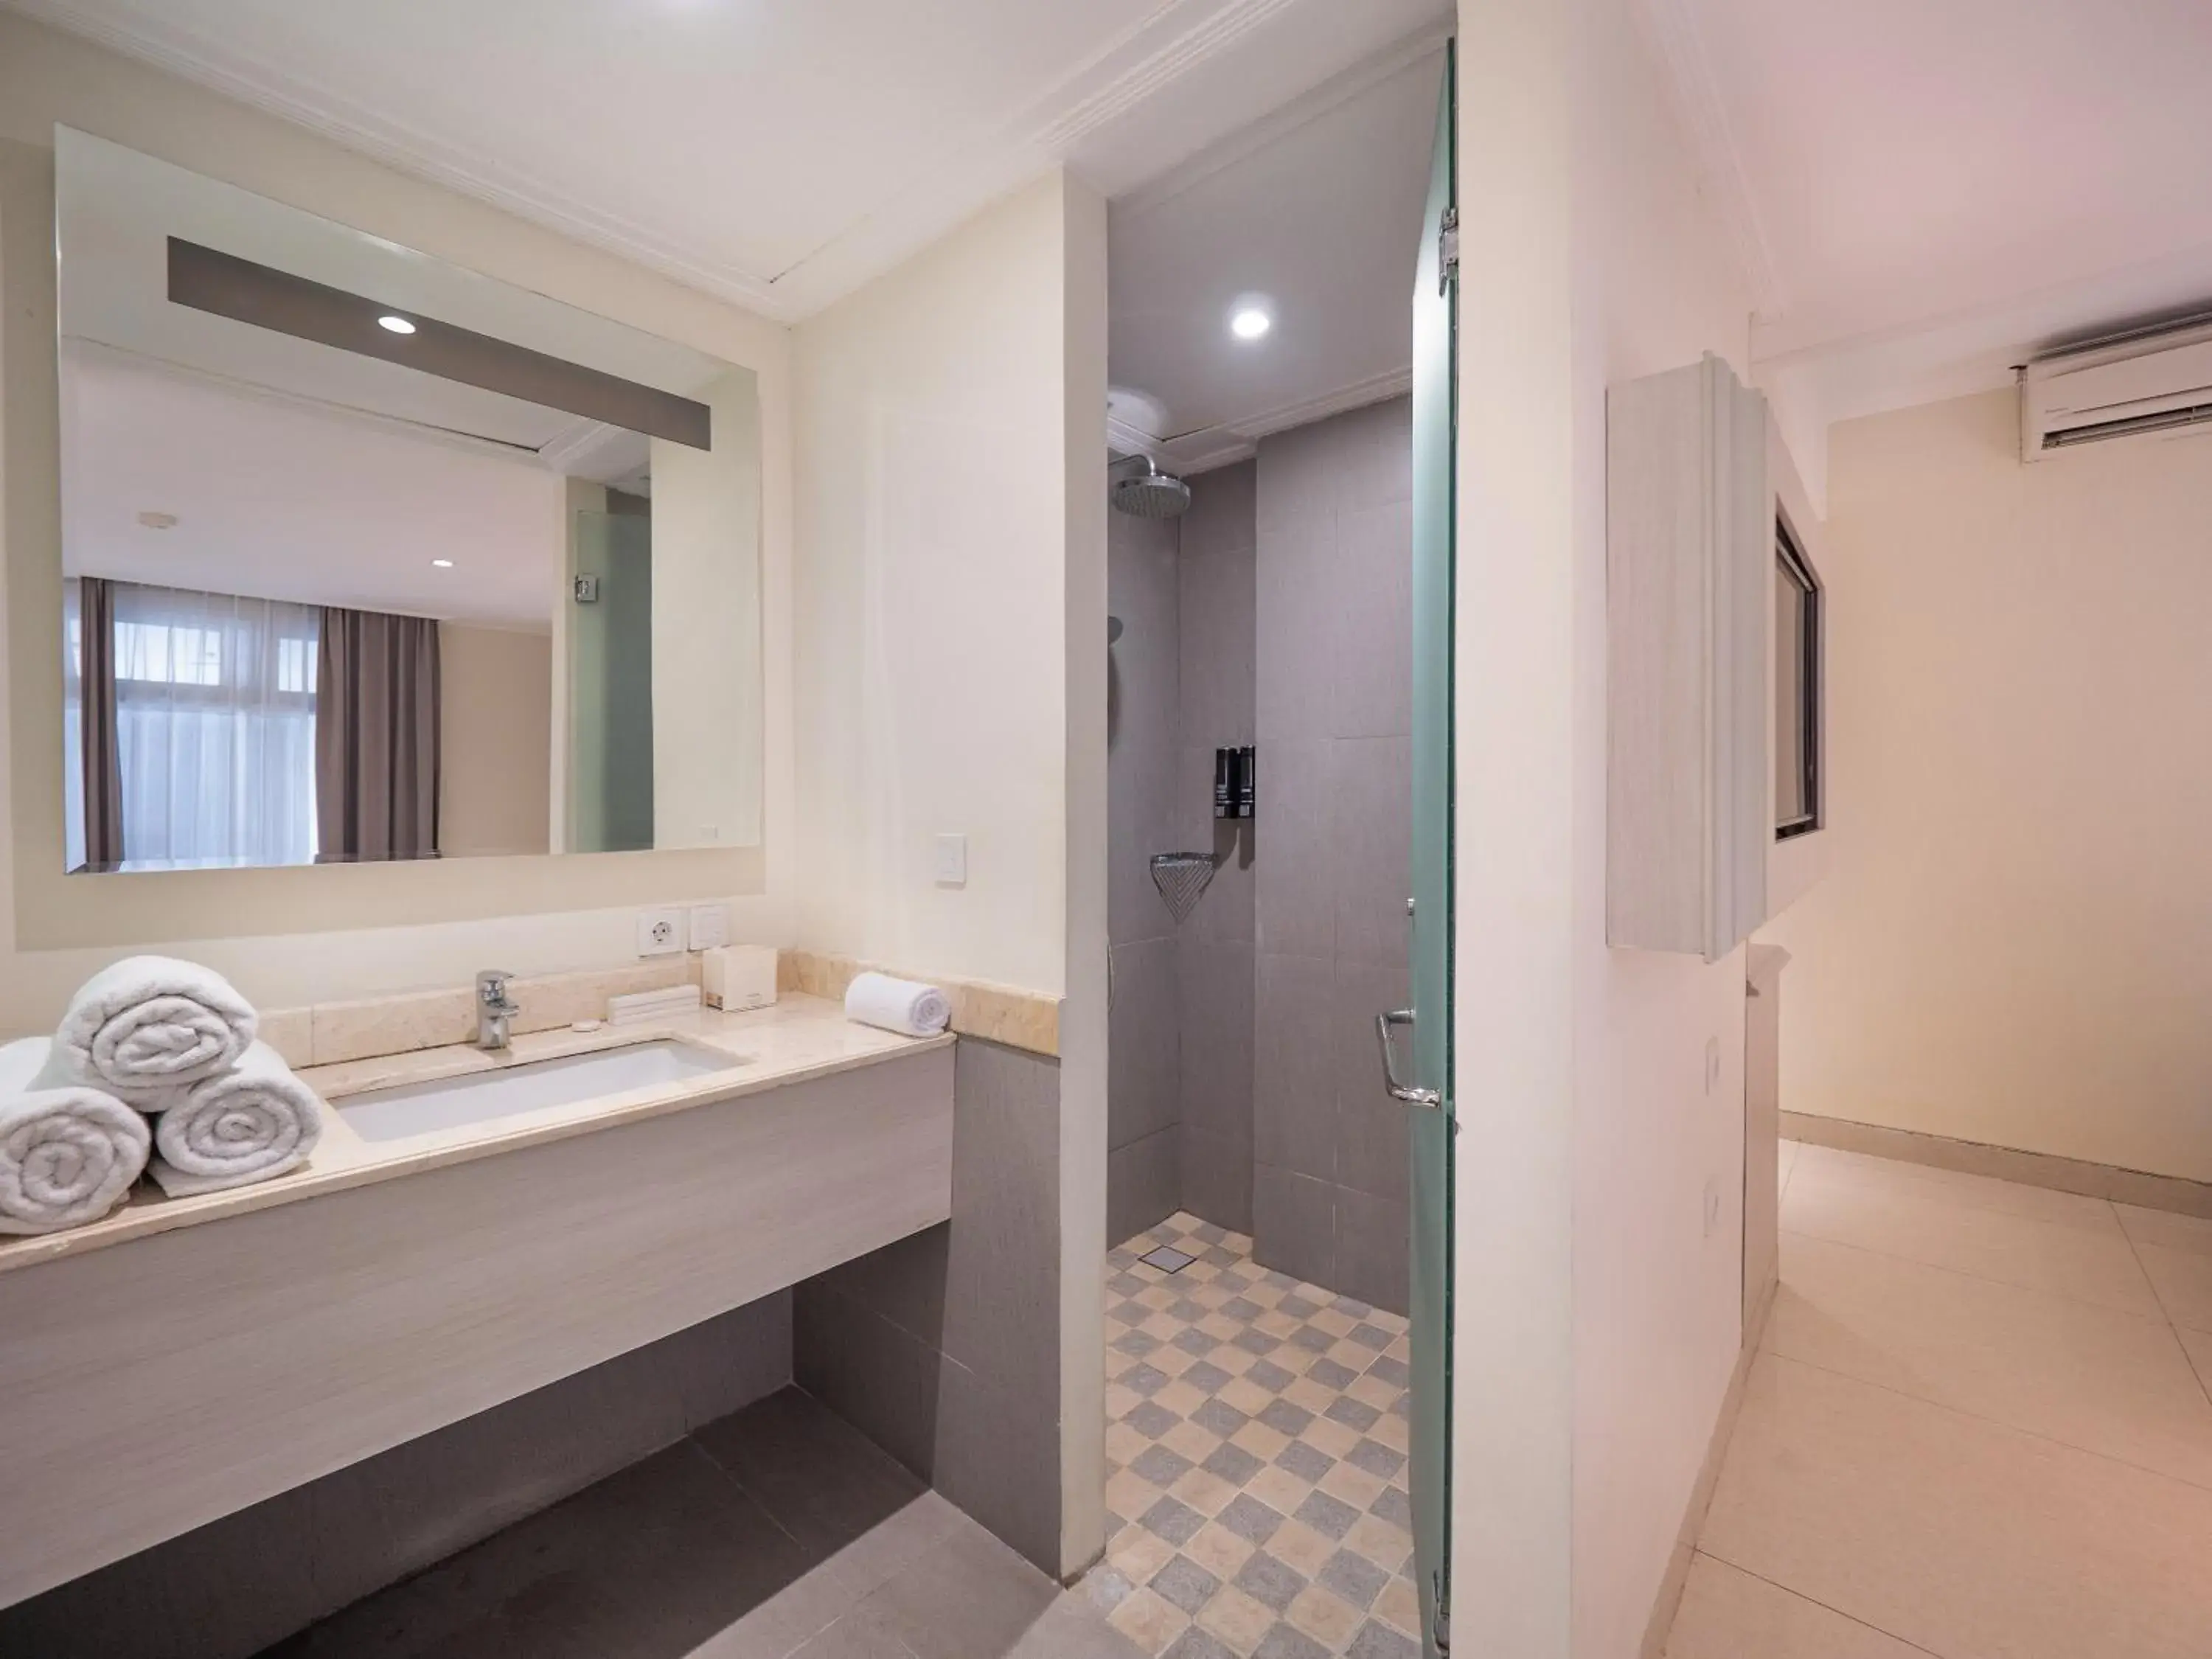 Shower, Bathroom in Alron Hotel Kuta Powered by Archipelago